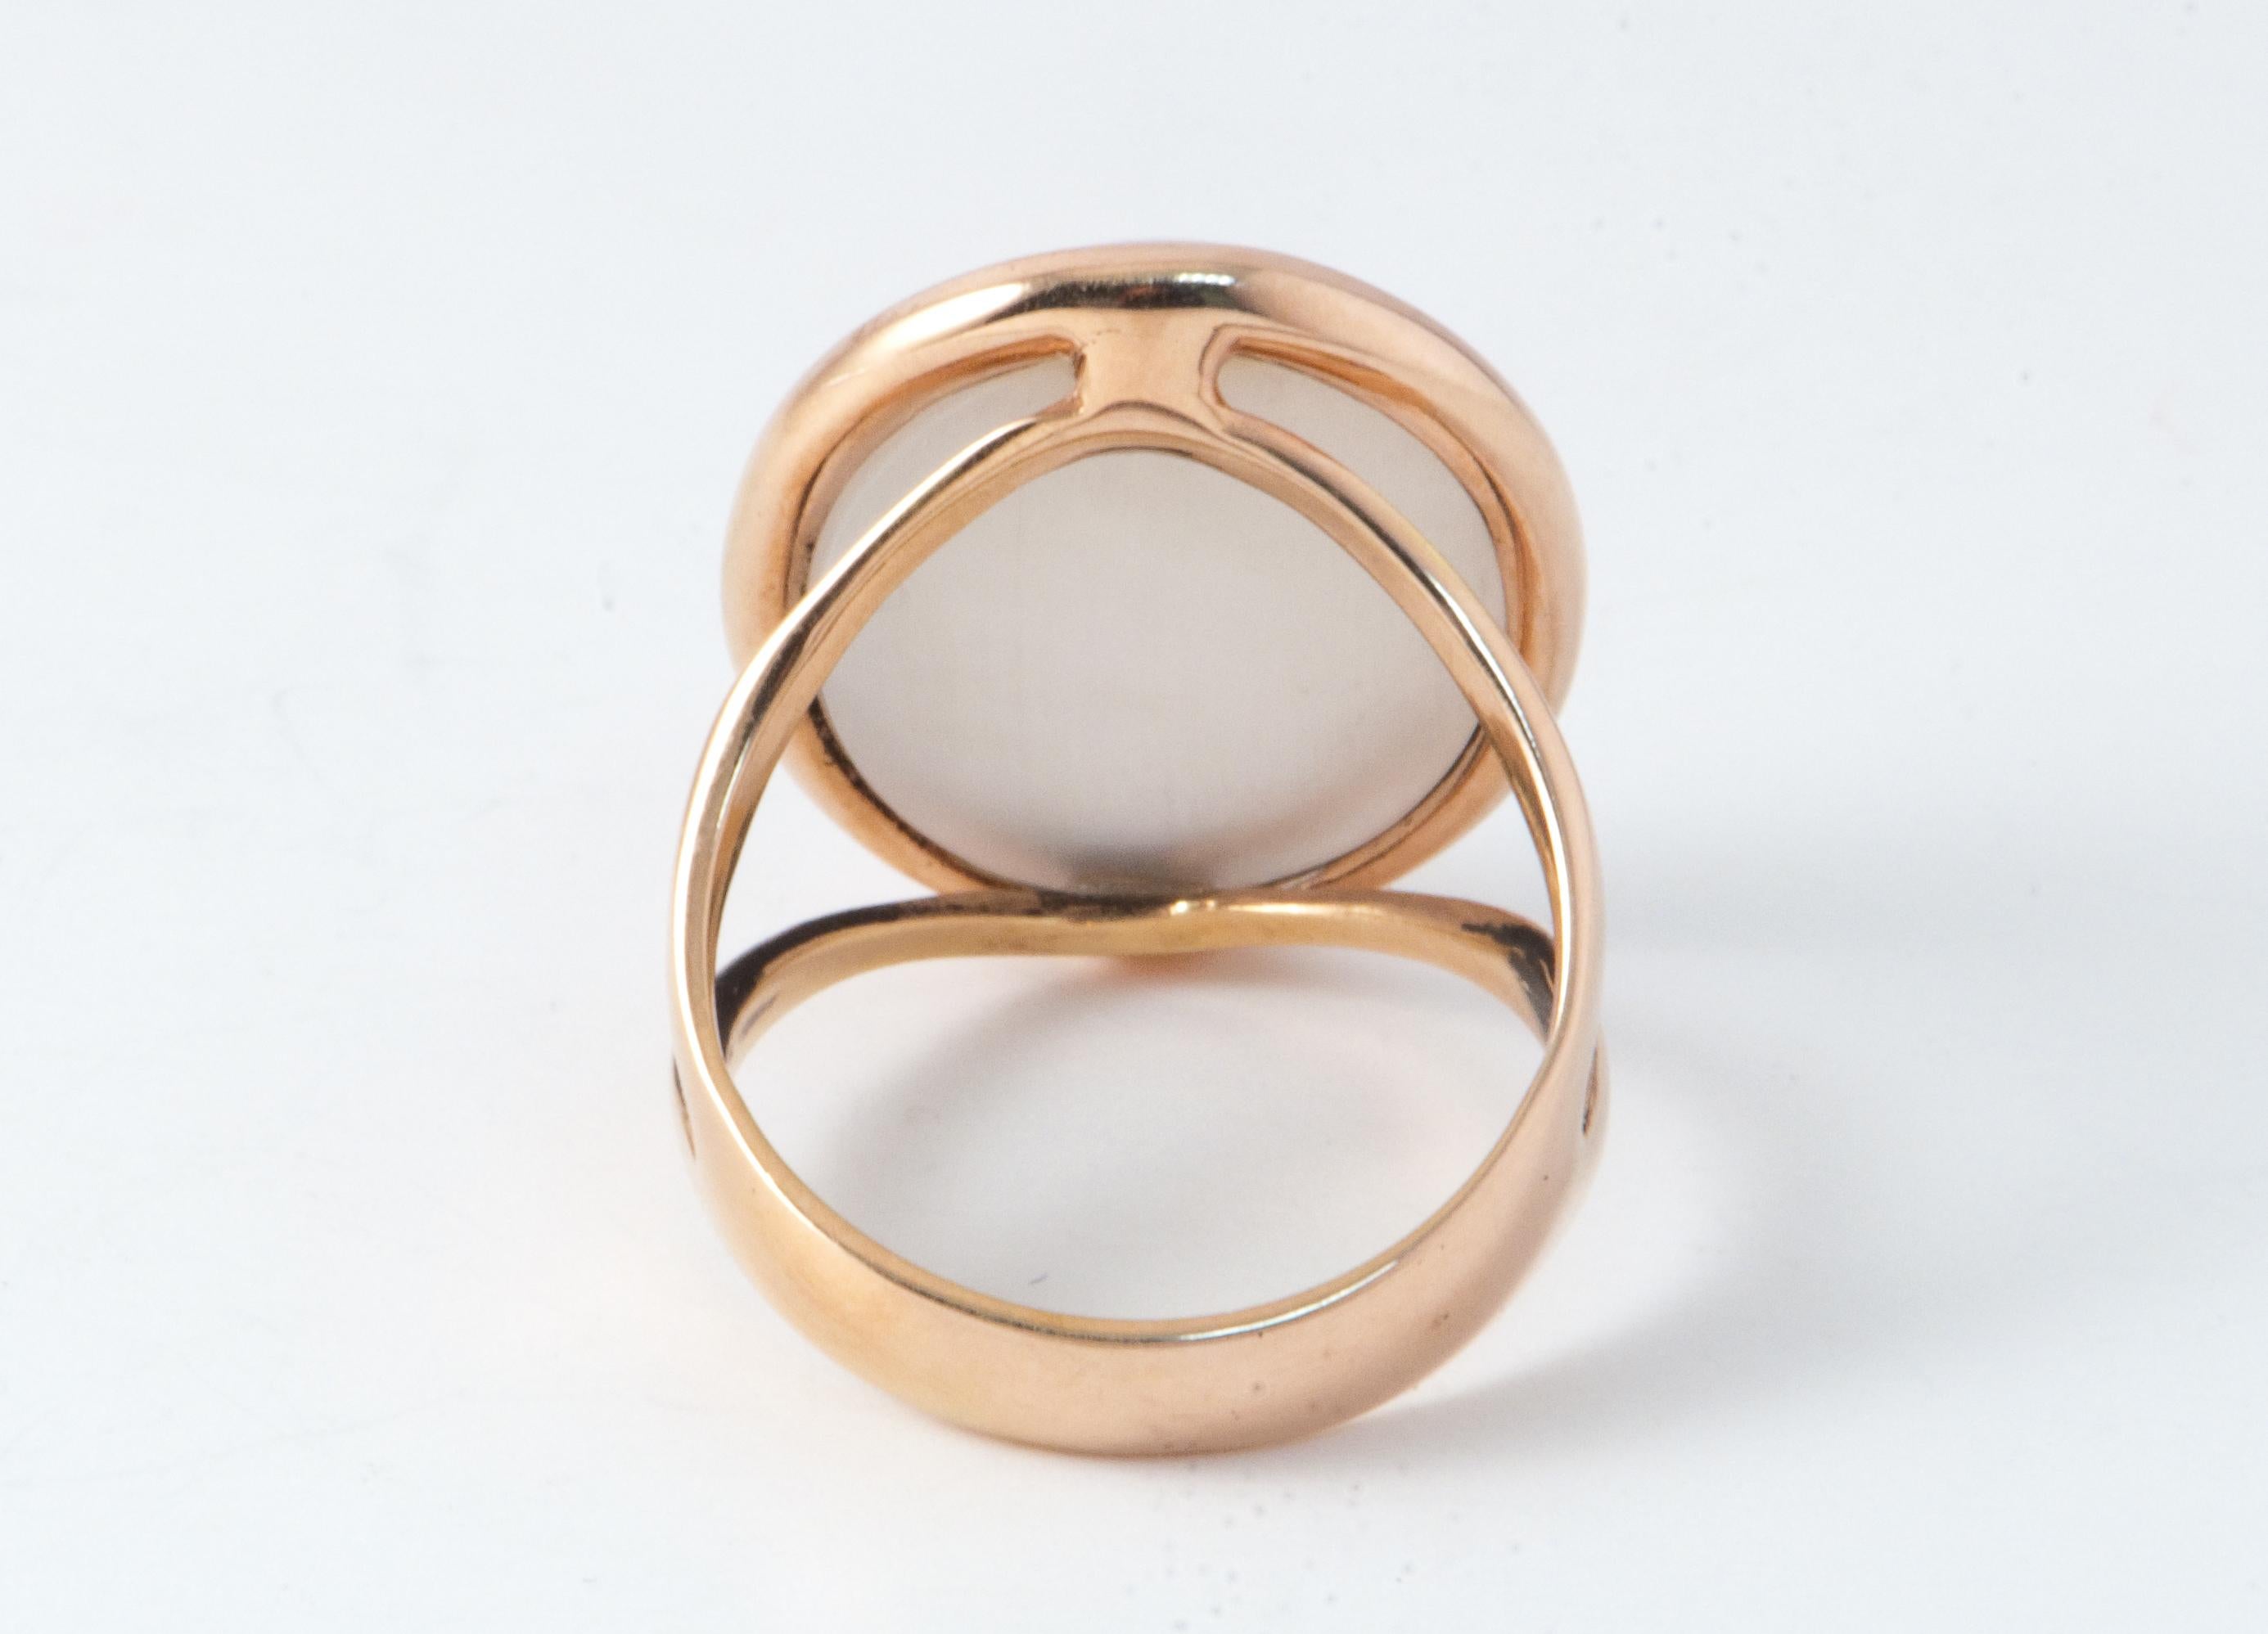  Pink Quartz Nacre Shape Cabochon Ring Pink Gold 18 Karat For Sale 1